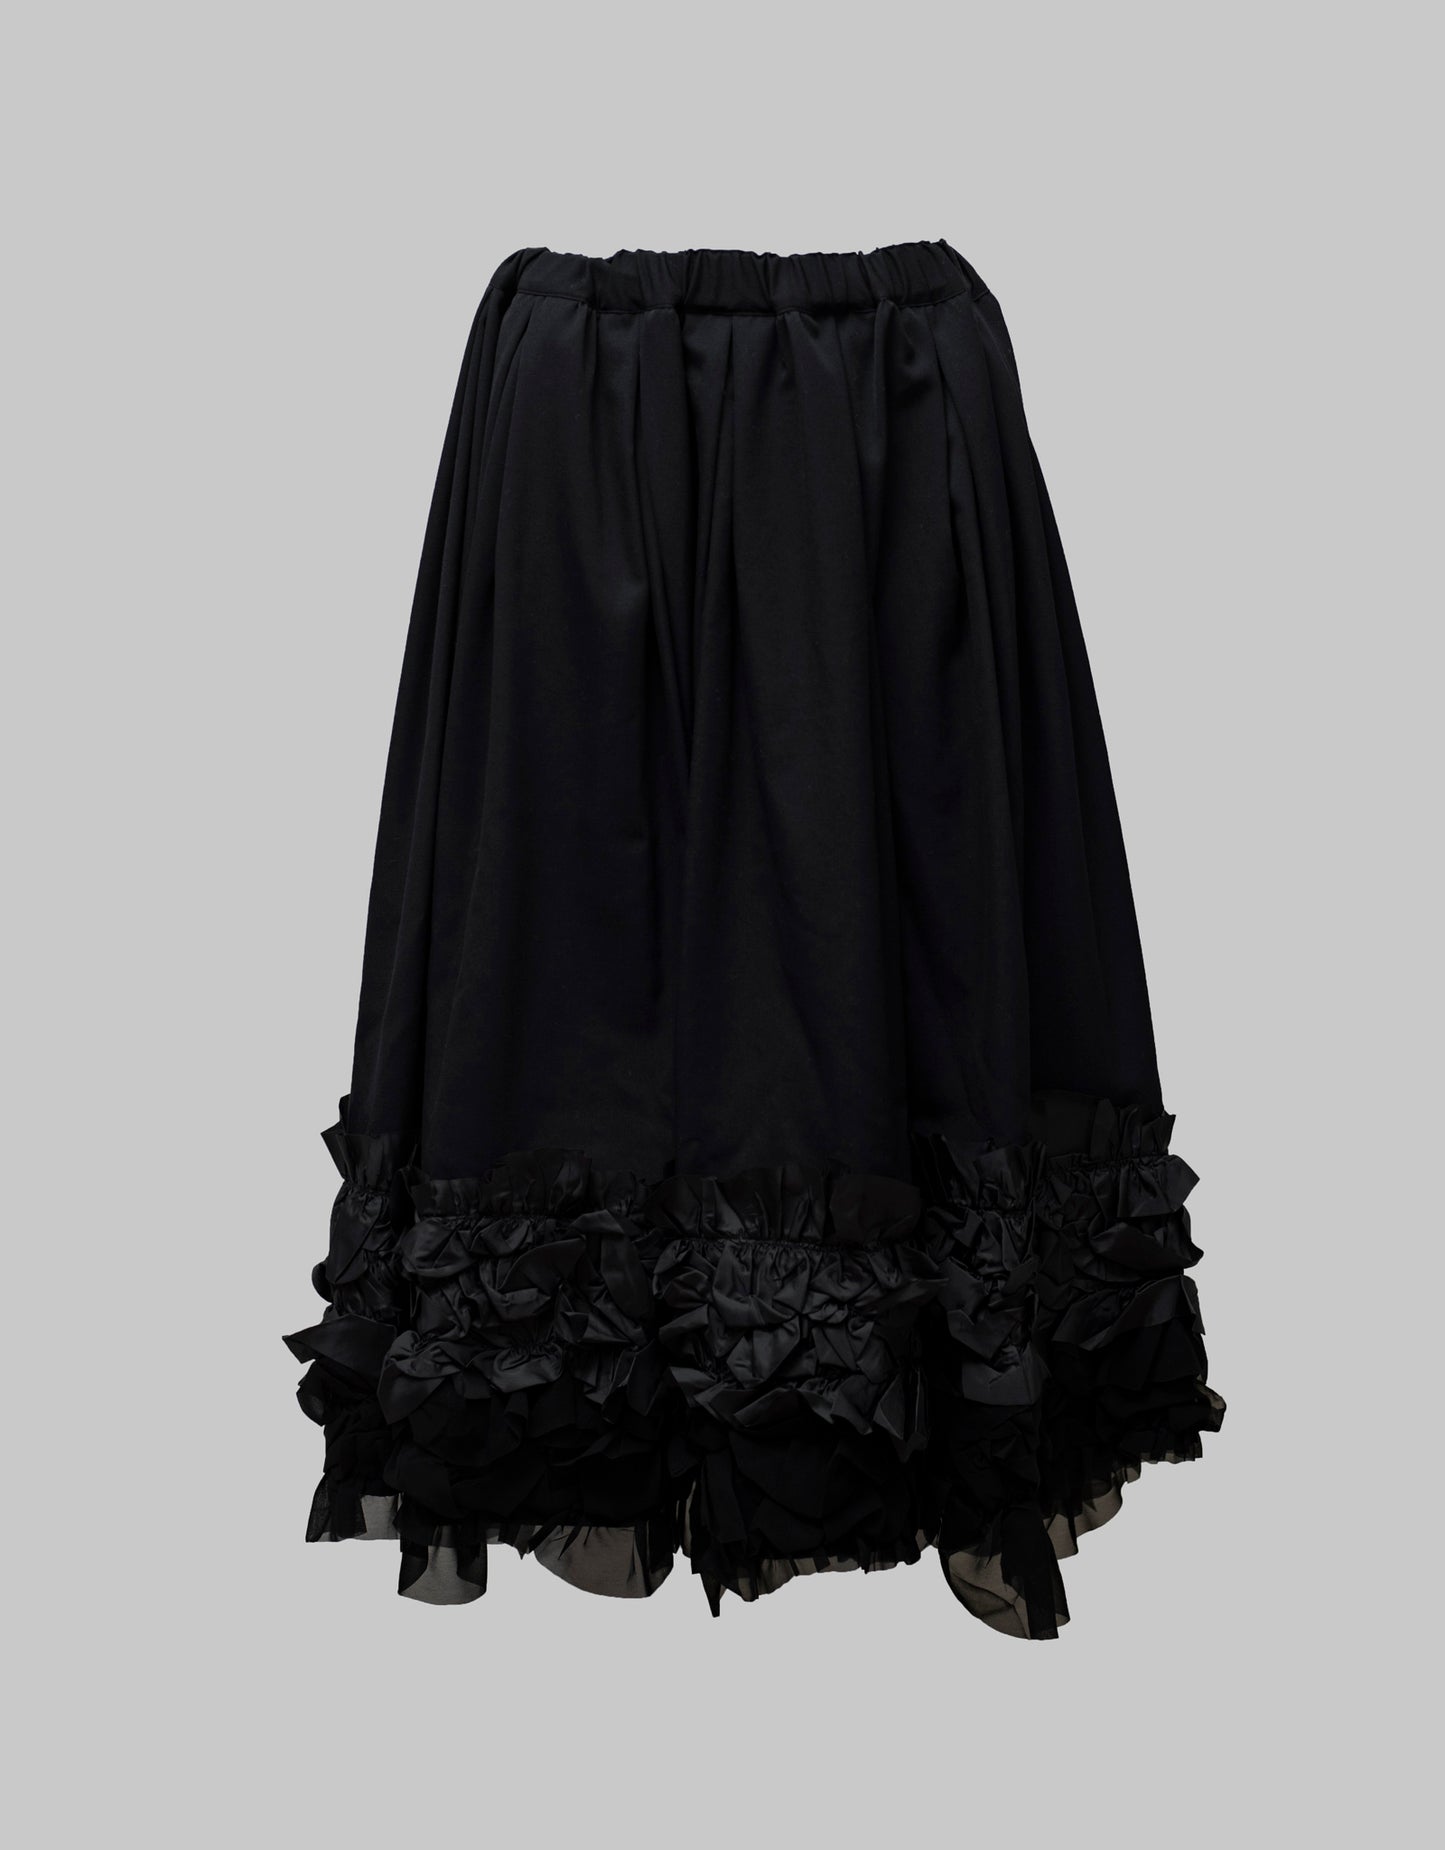 Blue/Black Skirt